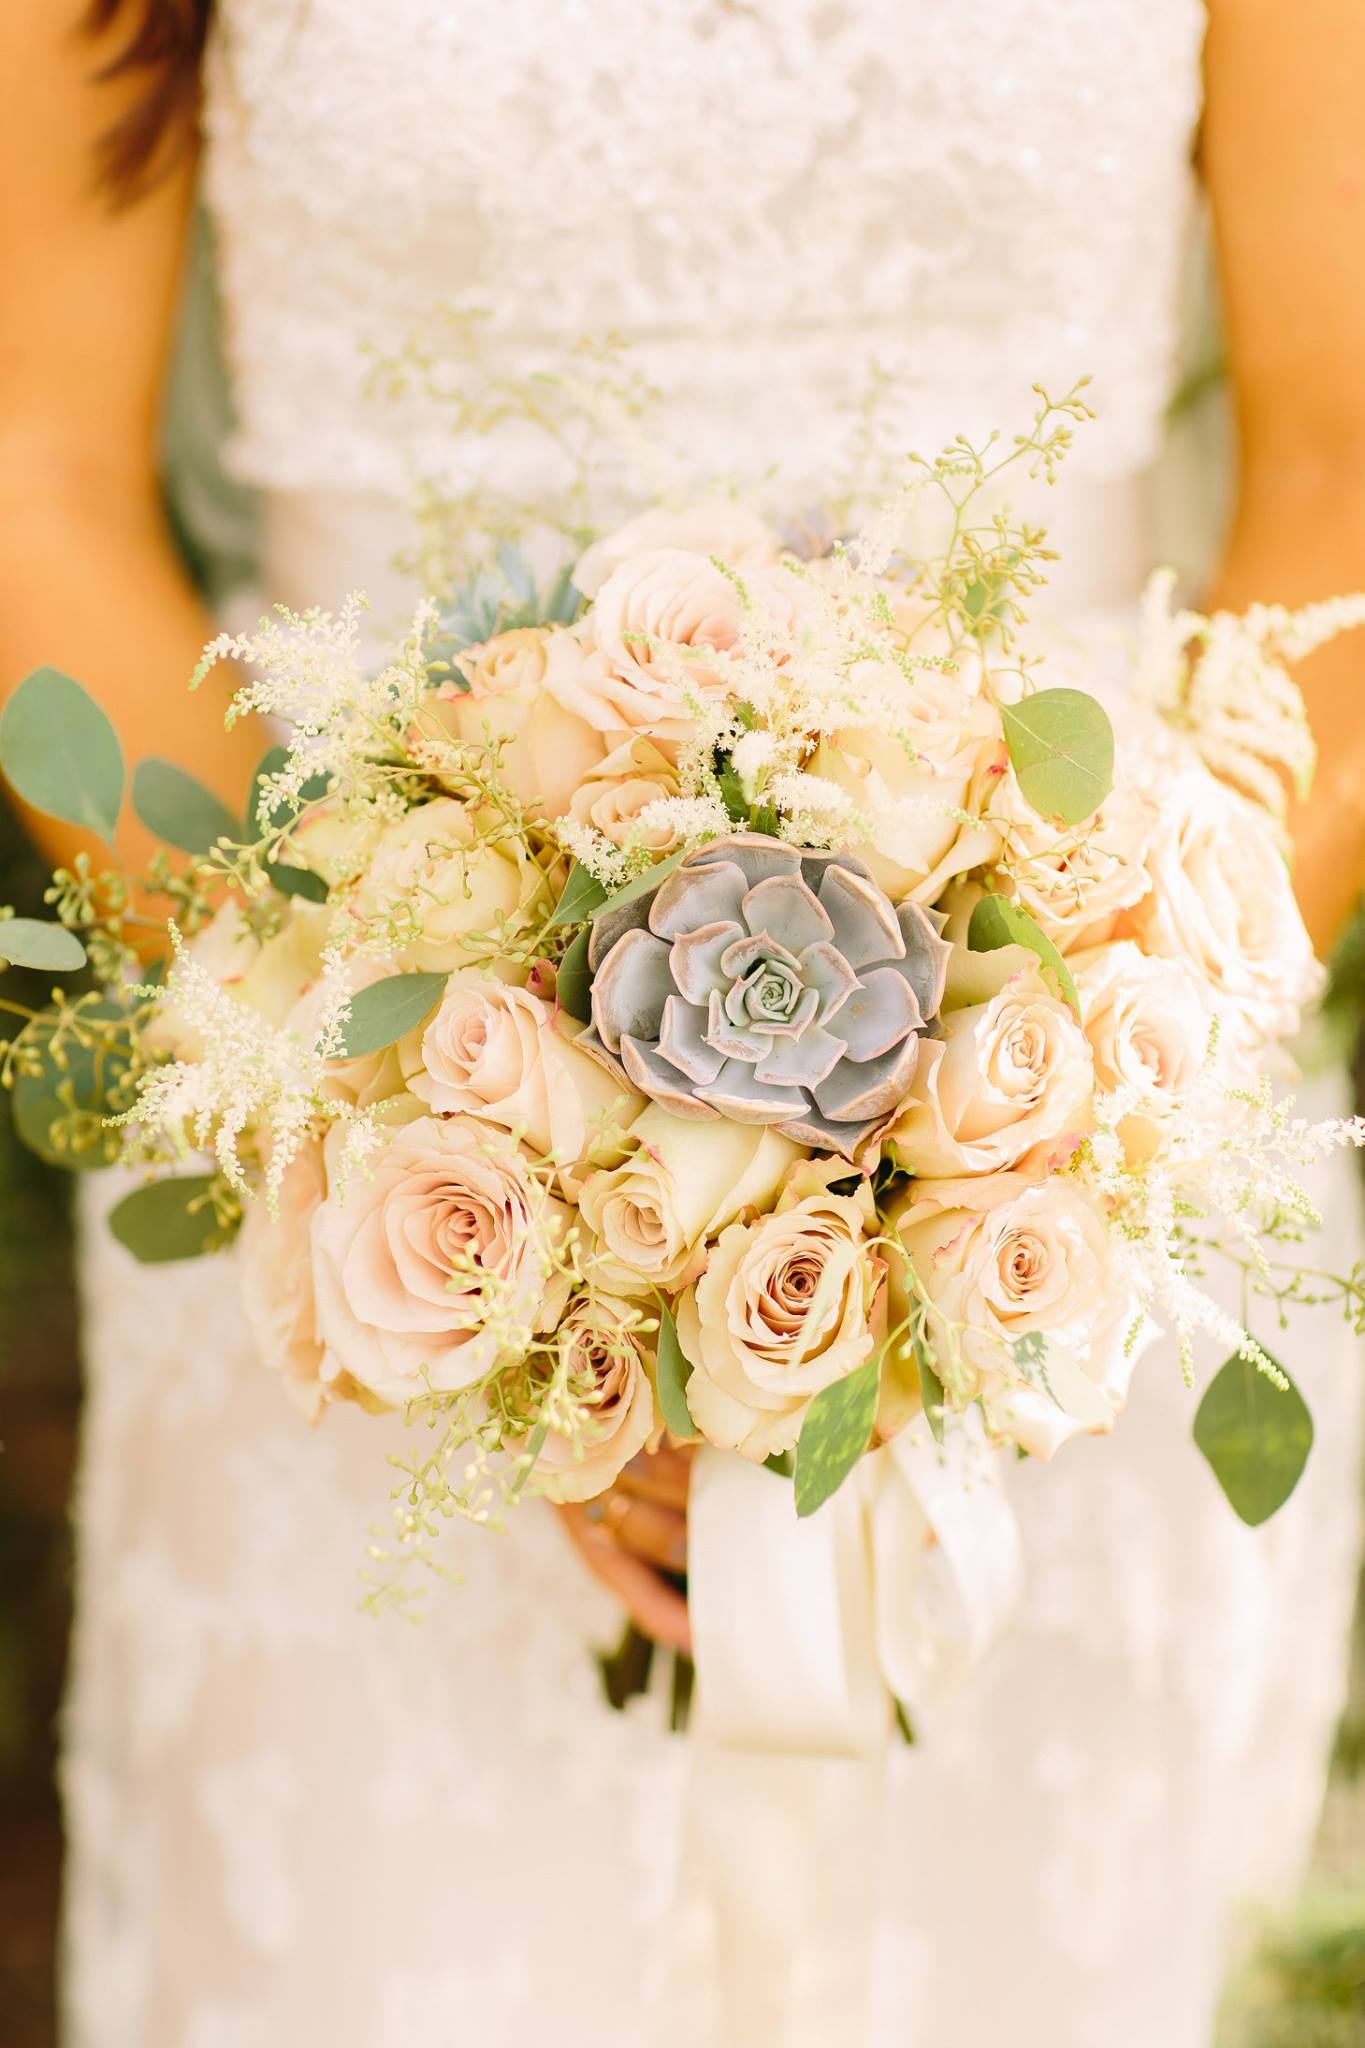 Allison's Romantic Boho Bridal Bouquet